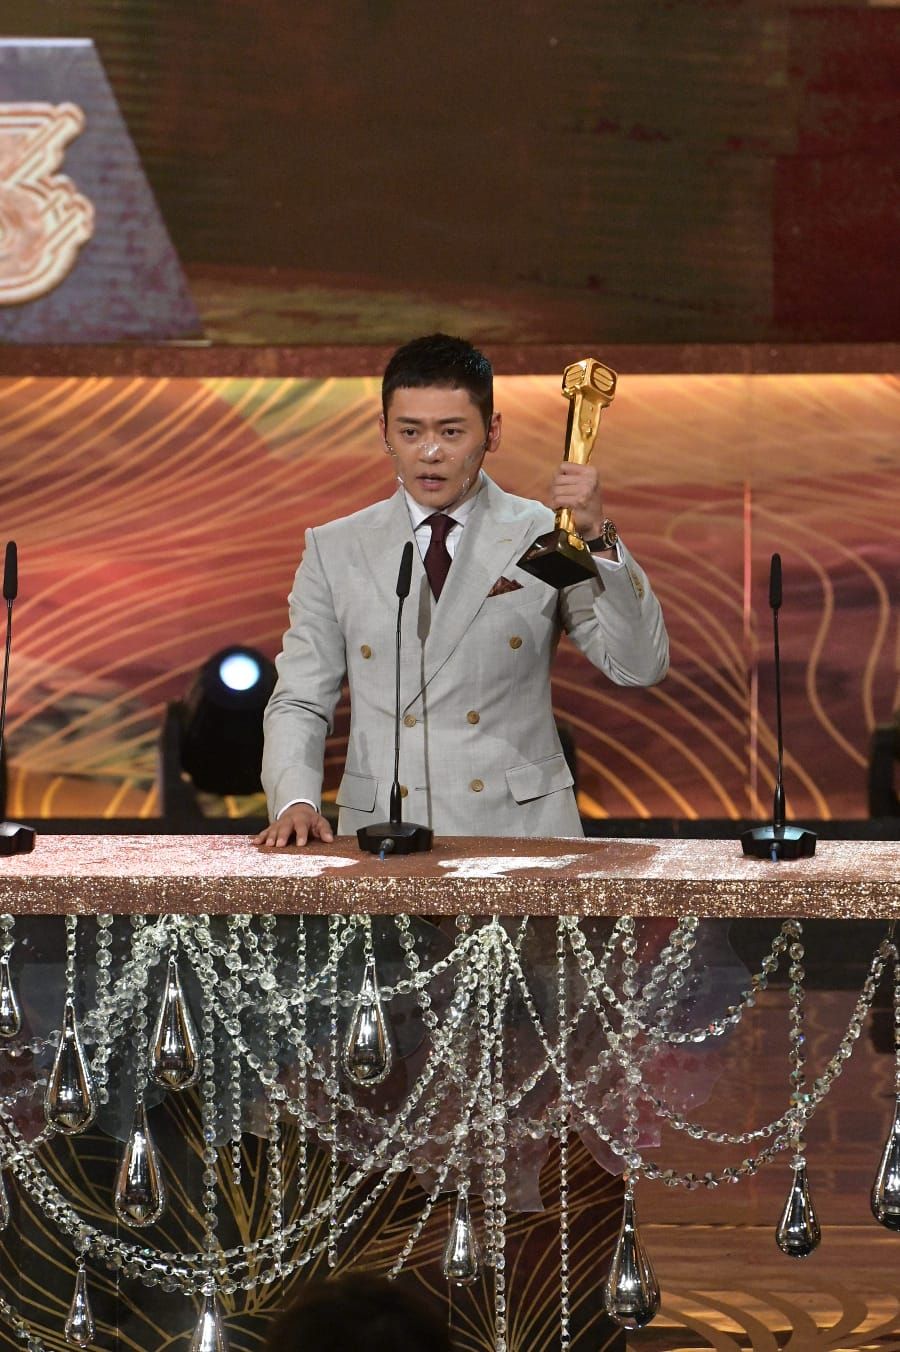 《反黑路人甲》为张振朗带来「最受欢迎电视男角色」奖项。